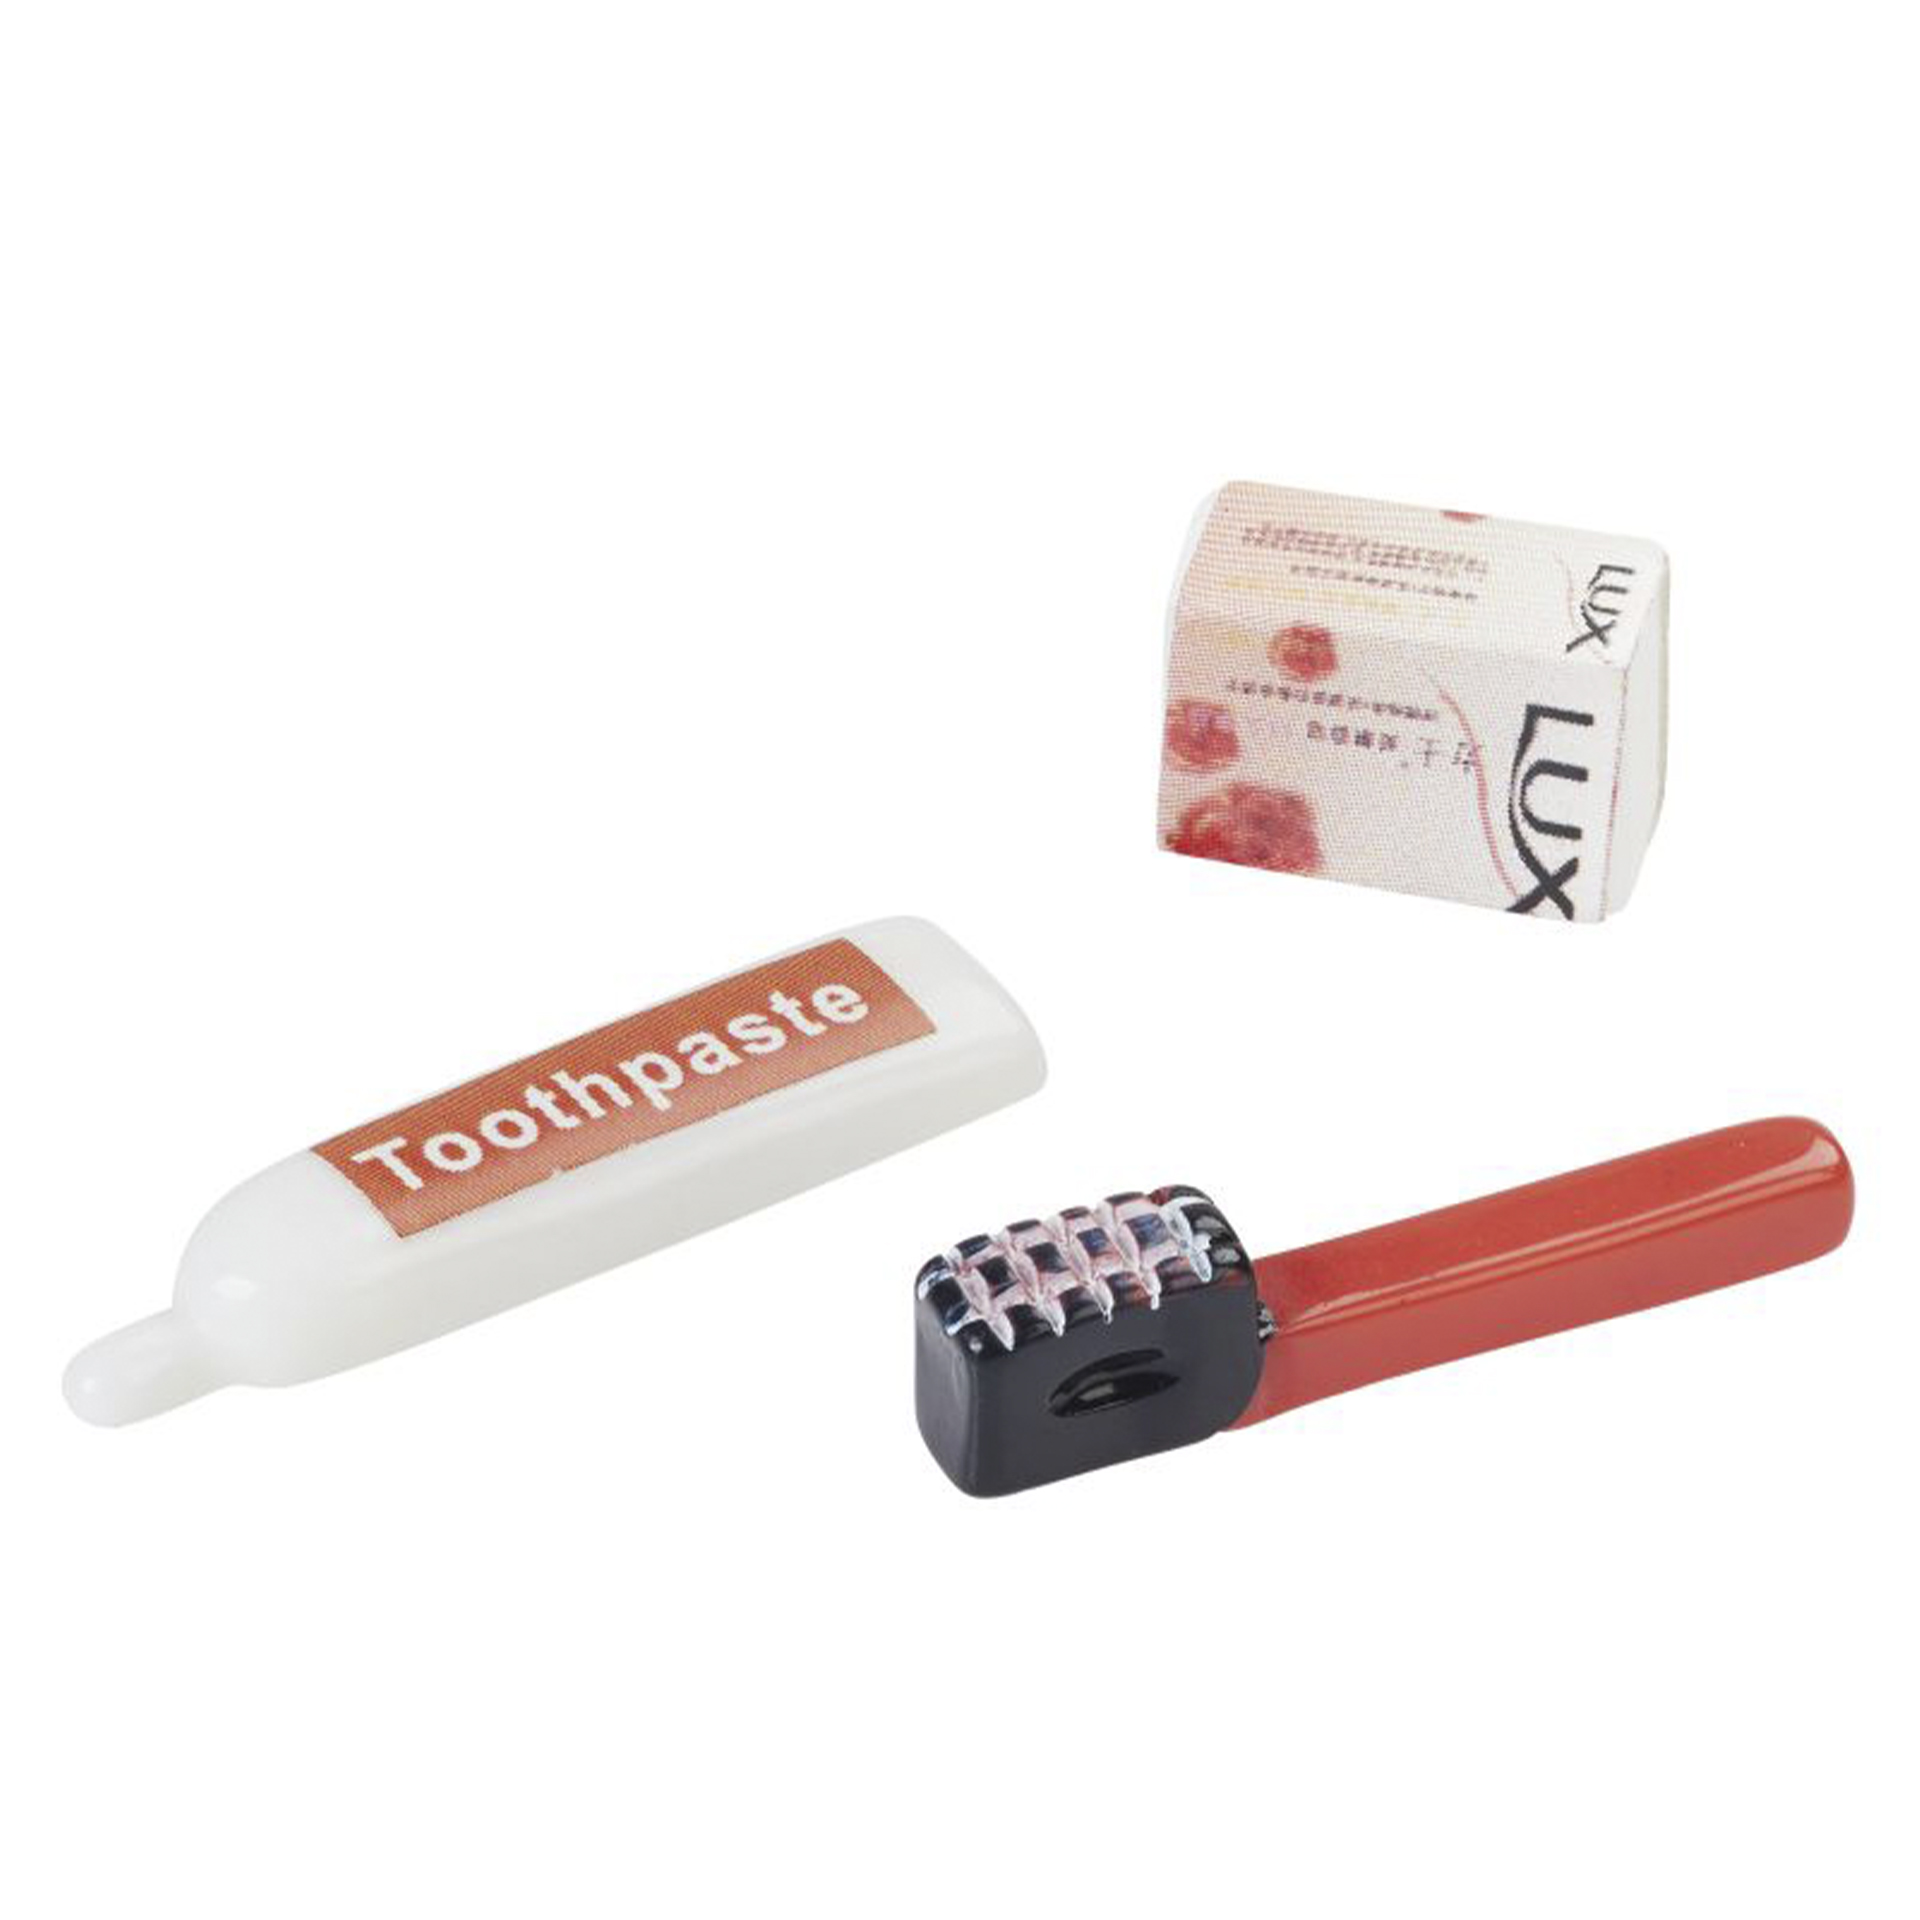 rote Zahnbürste mit dunklem Kopf, weiß-rote Tube und LUX-Seifenstück